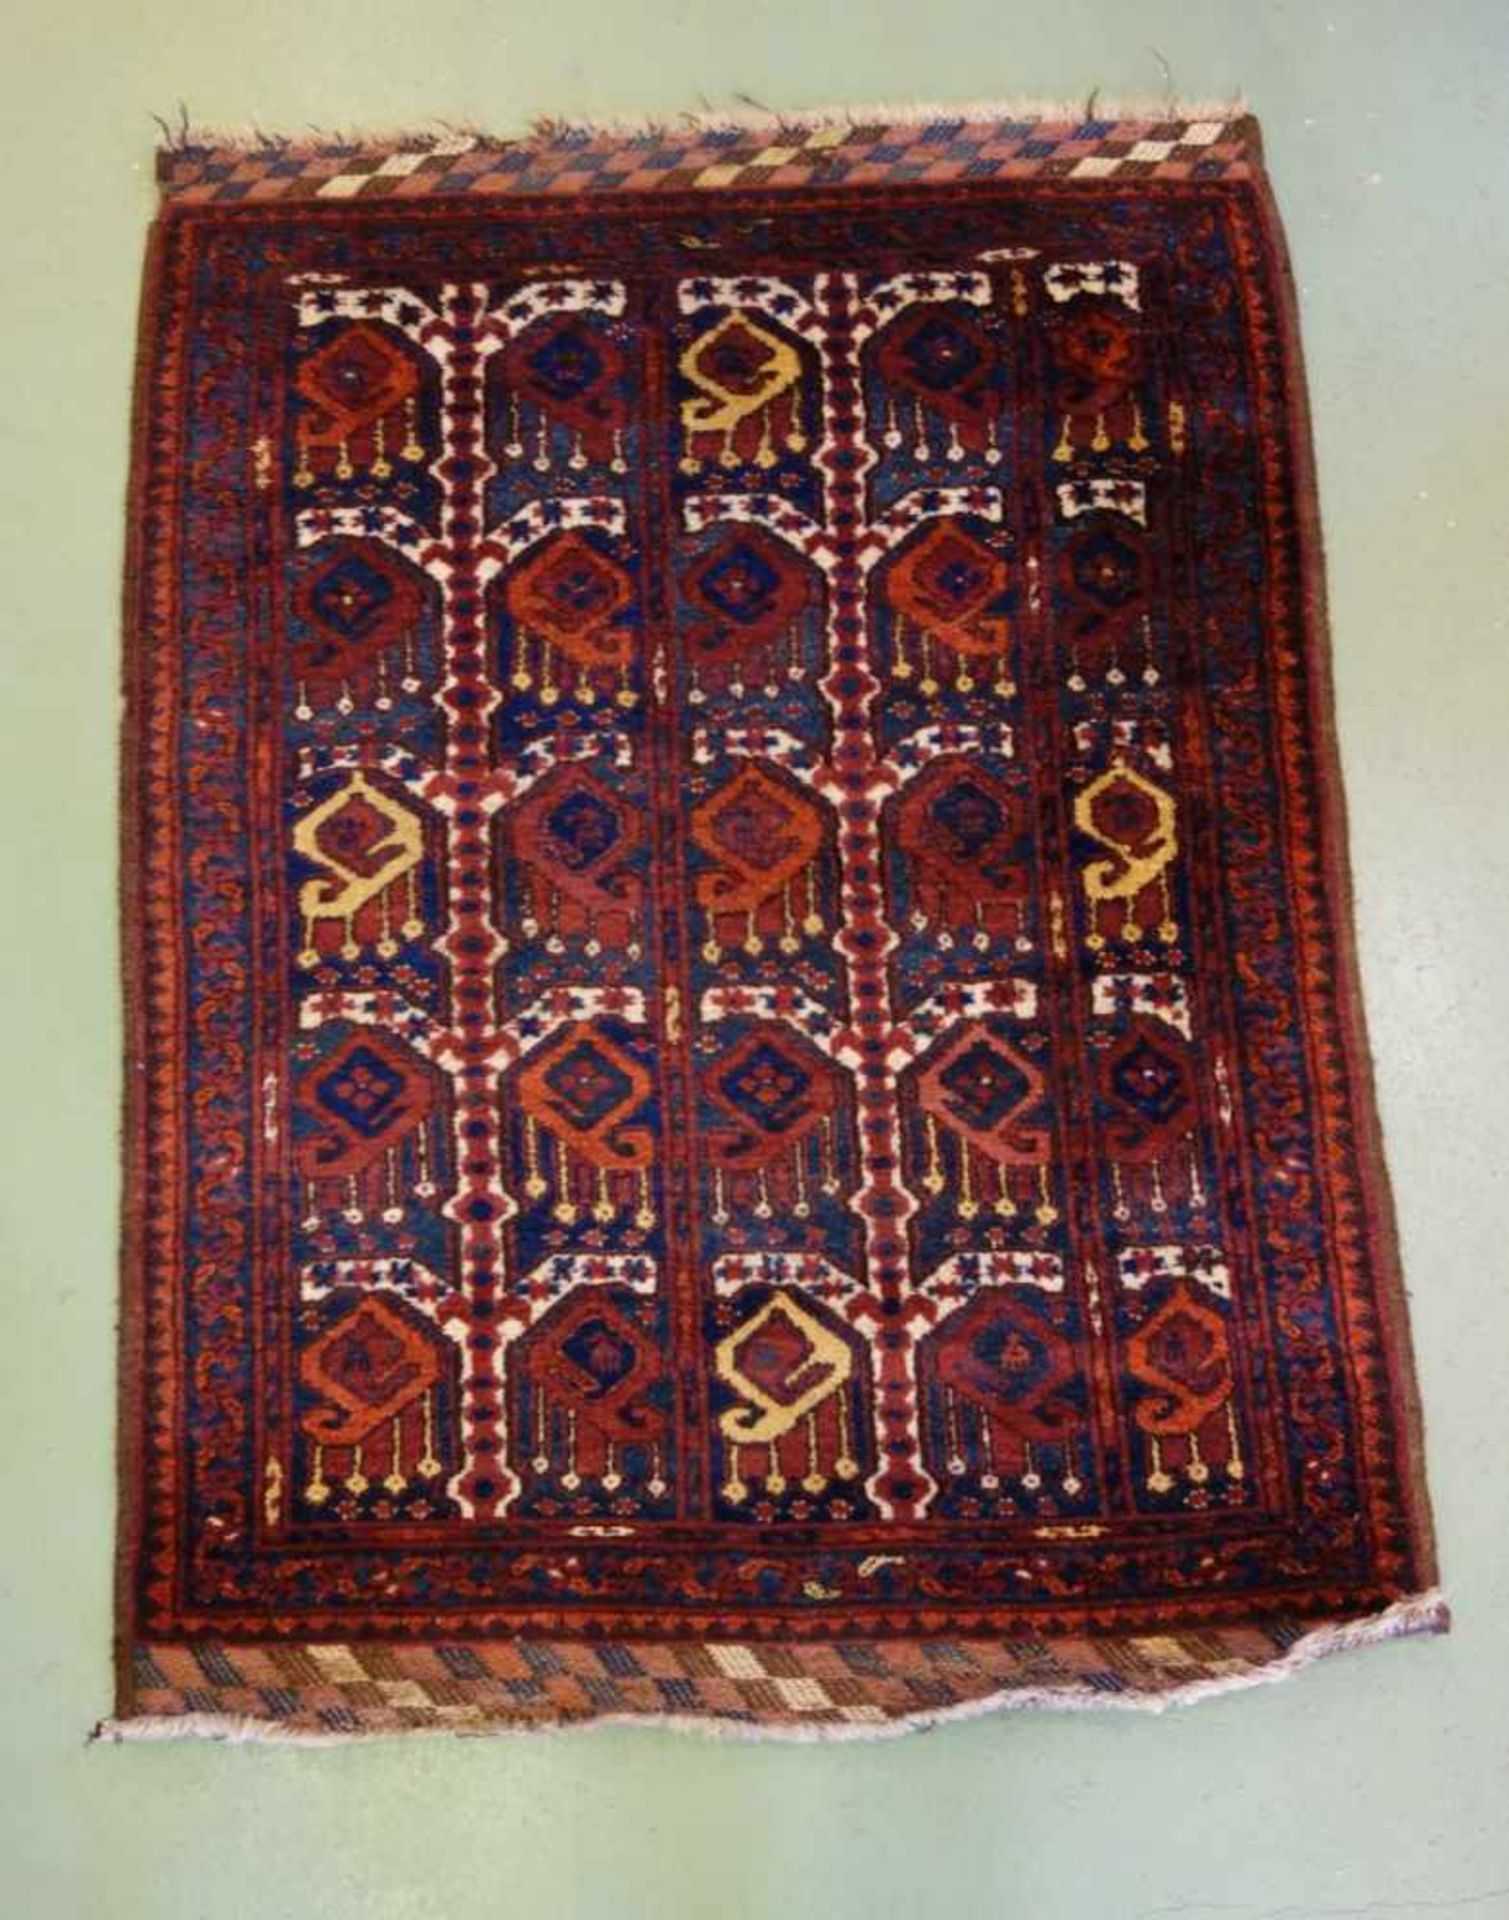 BESCHIR (ERSARI BESCHIR) / KLEINER TEPPICH / carpet / Zentralasien oder Südturkestan, wahrscheinlich - Image 2 of 15